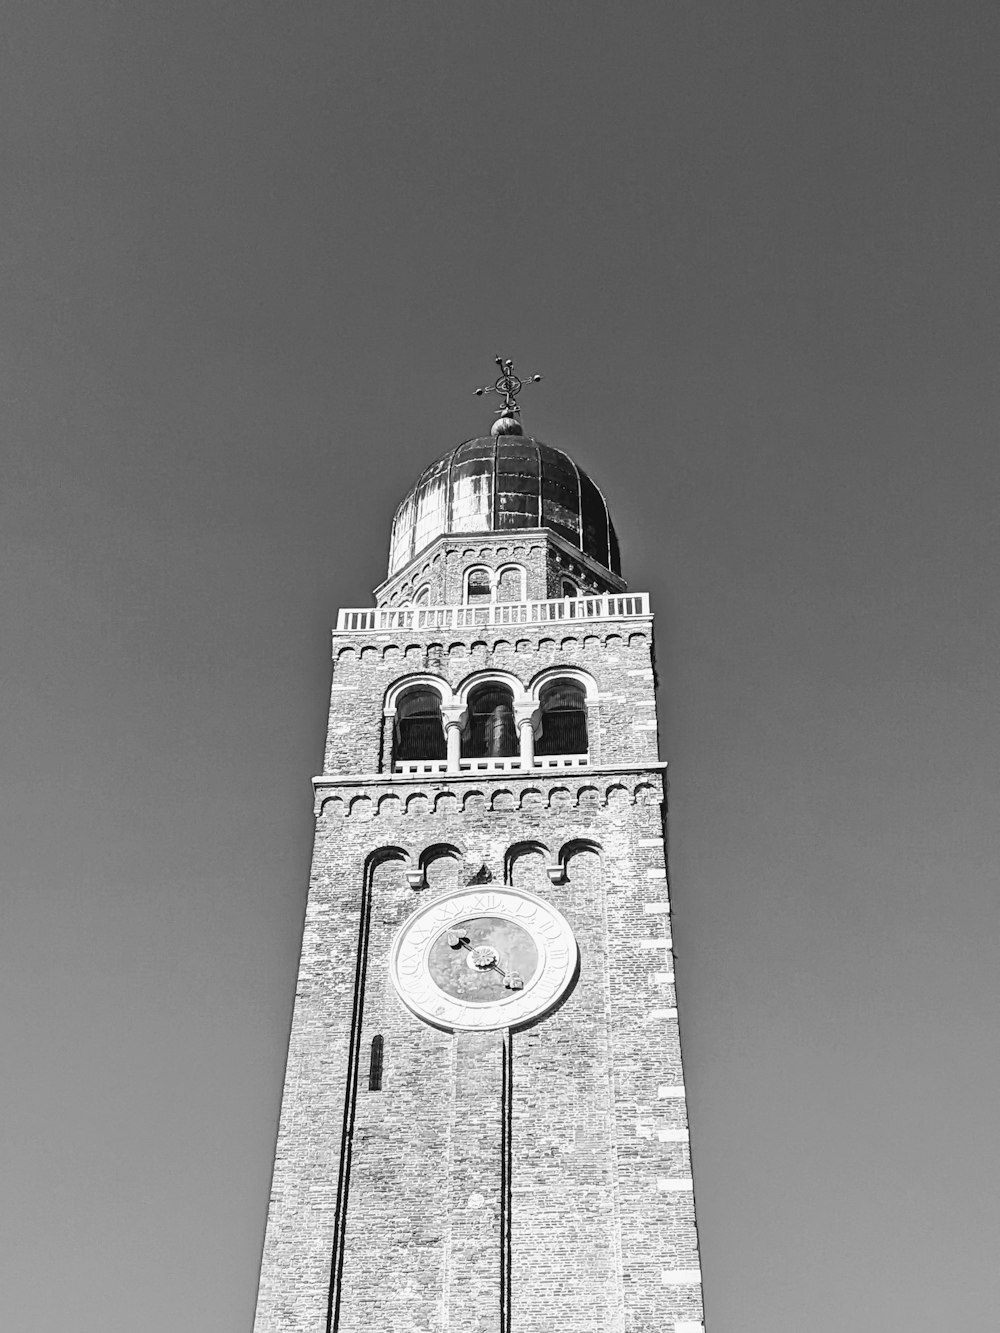 Ein Schwarz-Weiß-Foto eines Uhrenturms